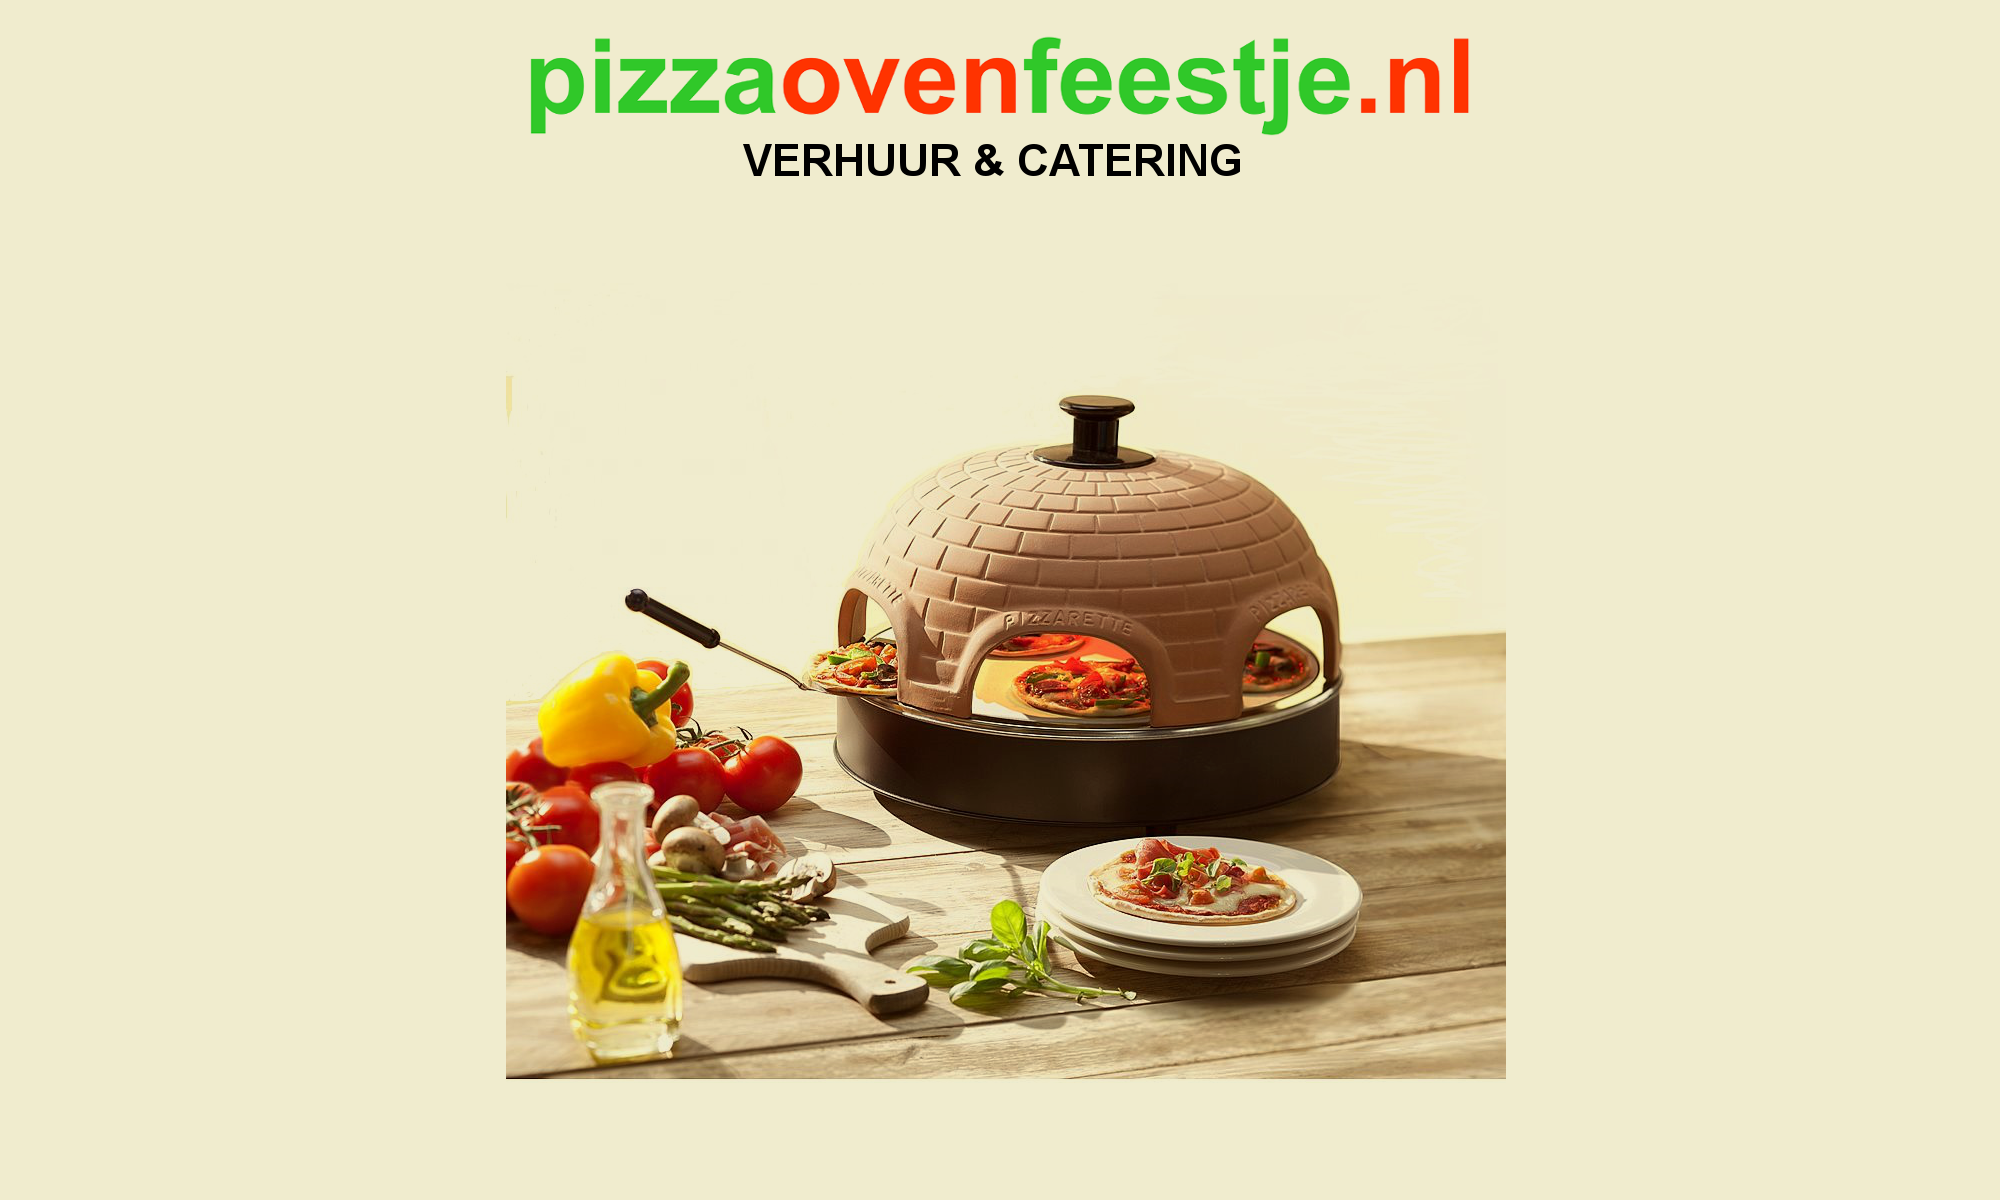 pizzaovenfeestje.nl